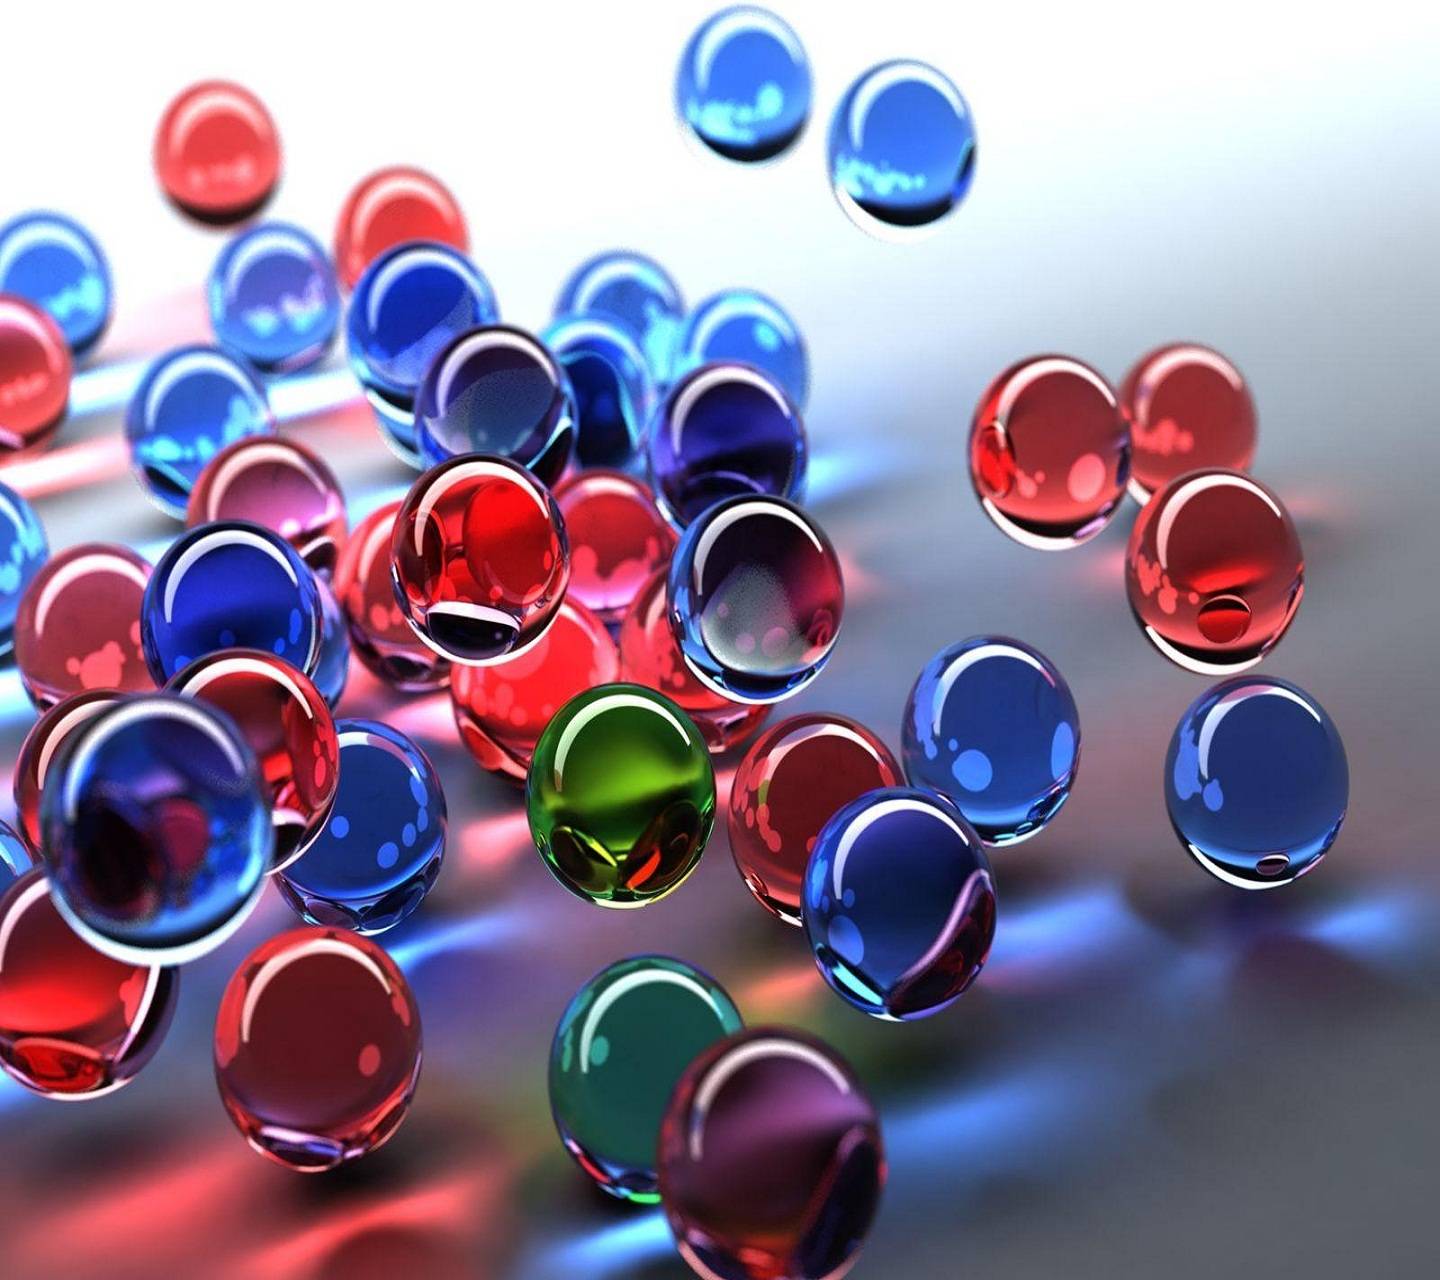 دانلود والپیپر رایگان مدرن و گرافیکی از توپ های کریستالی رنگی 